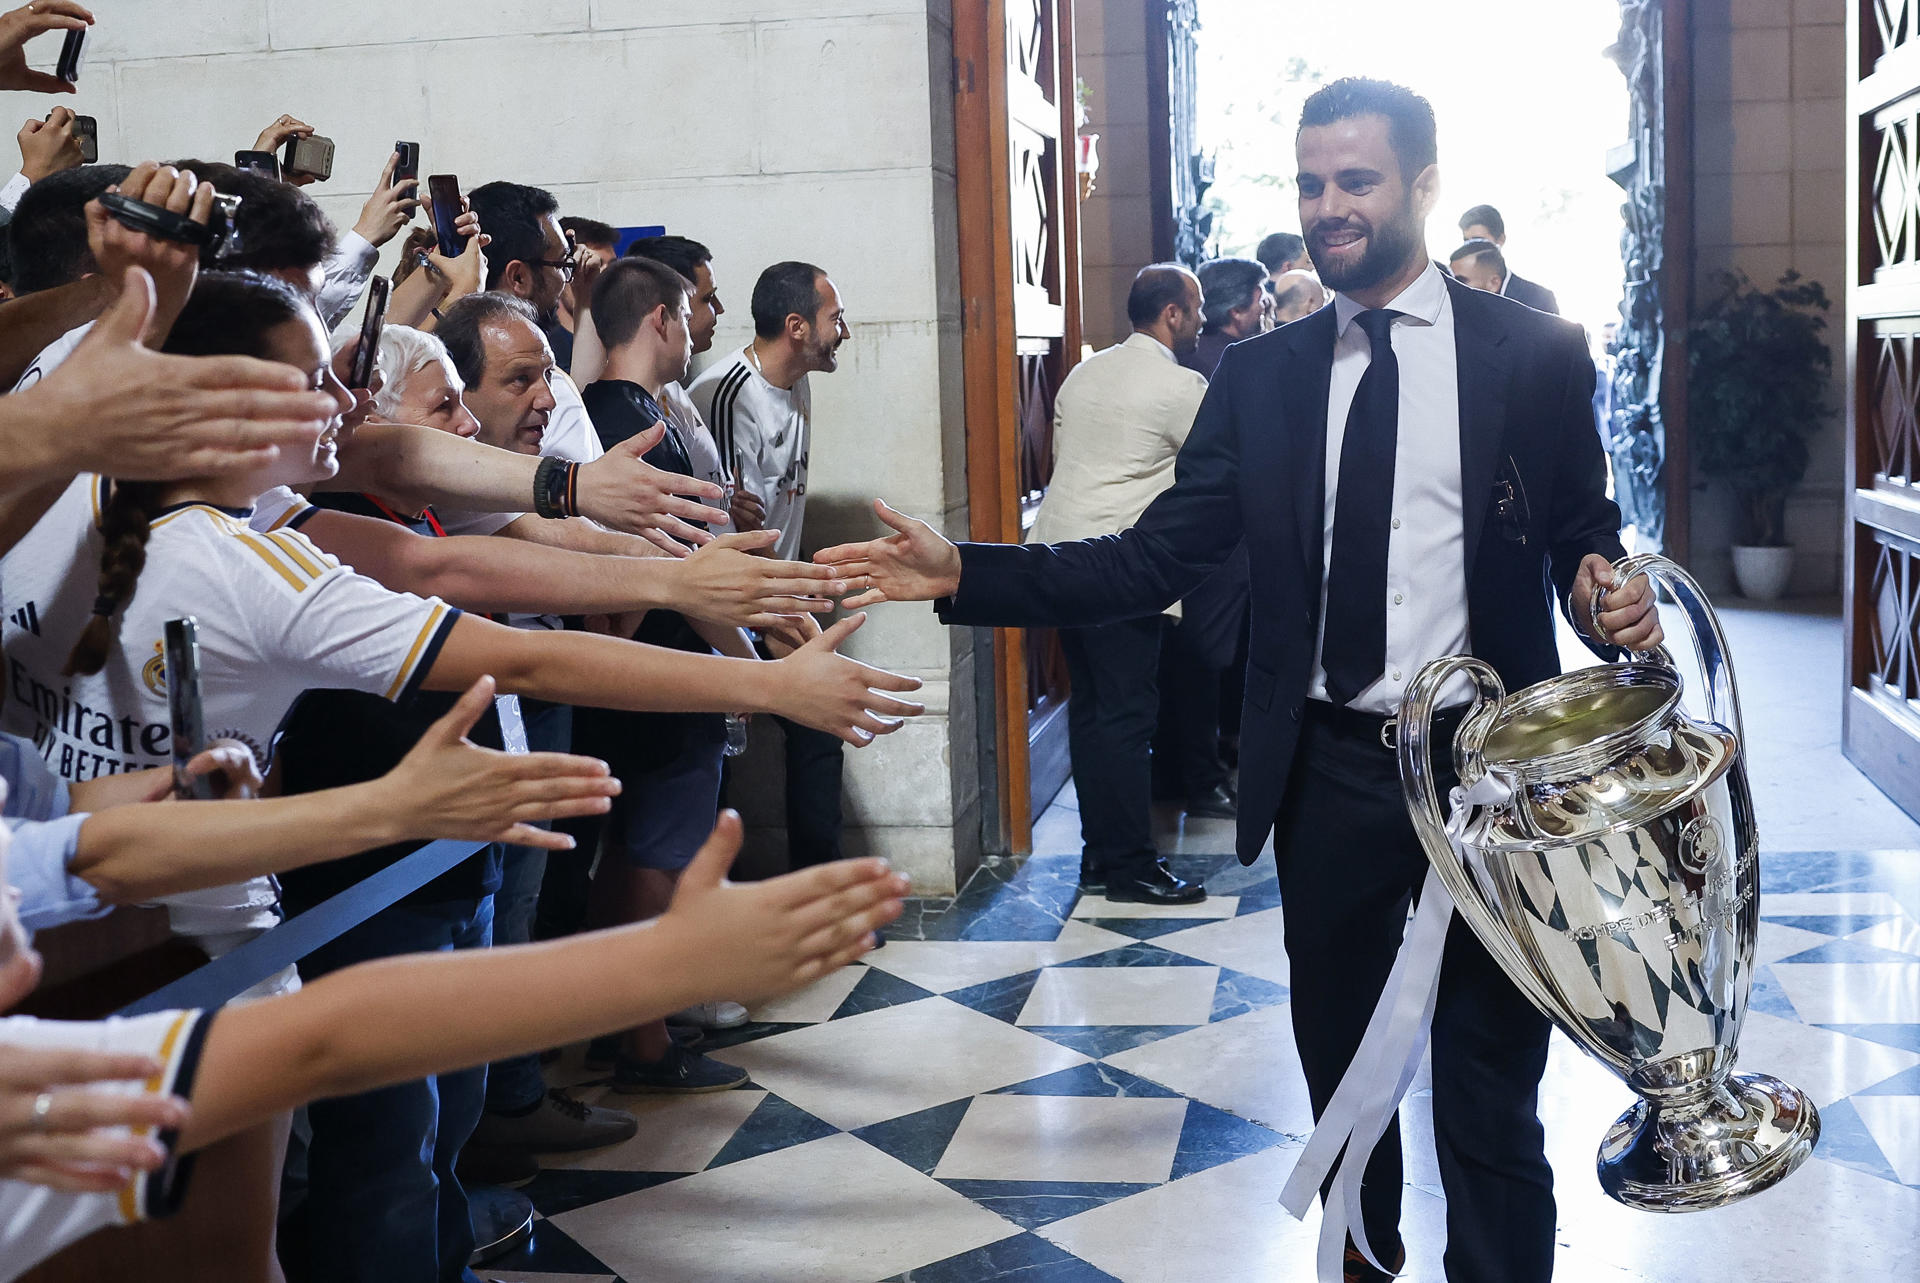 El capitán del Real Madrid, Nacho Fernández, saluda a los aficionados a su llegada a la Catedral de la Almudena, primera parada del recorrido realizado este domingo por el equipo para celebrar su victoria en la final de la Liga de Campeones. EFE/Chema Moya POOL
